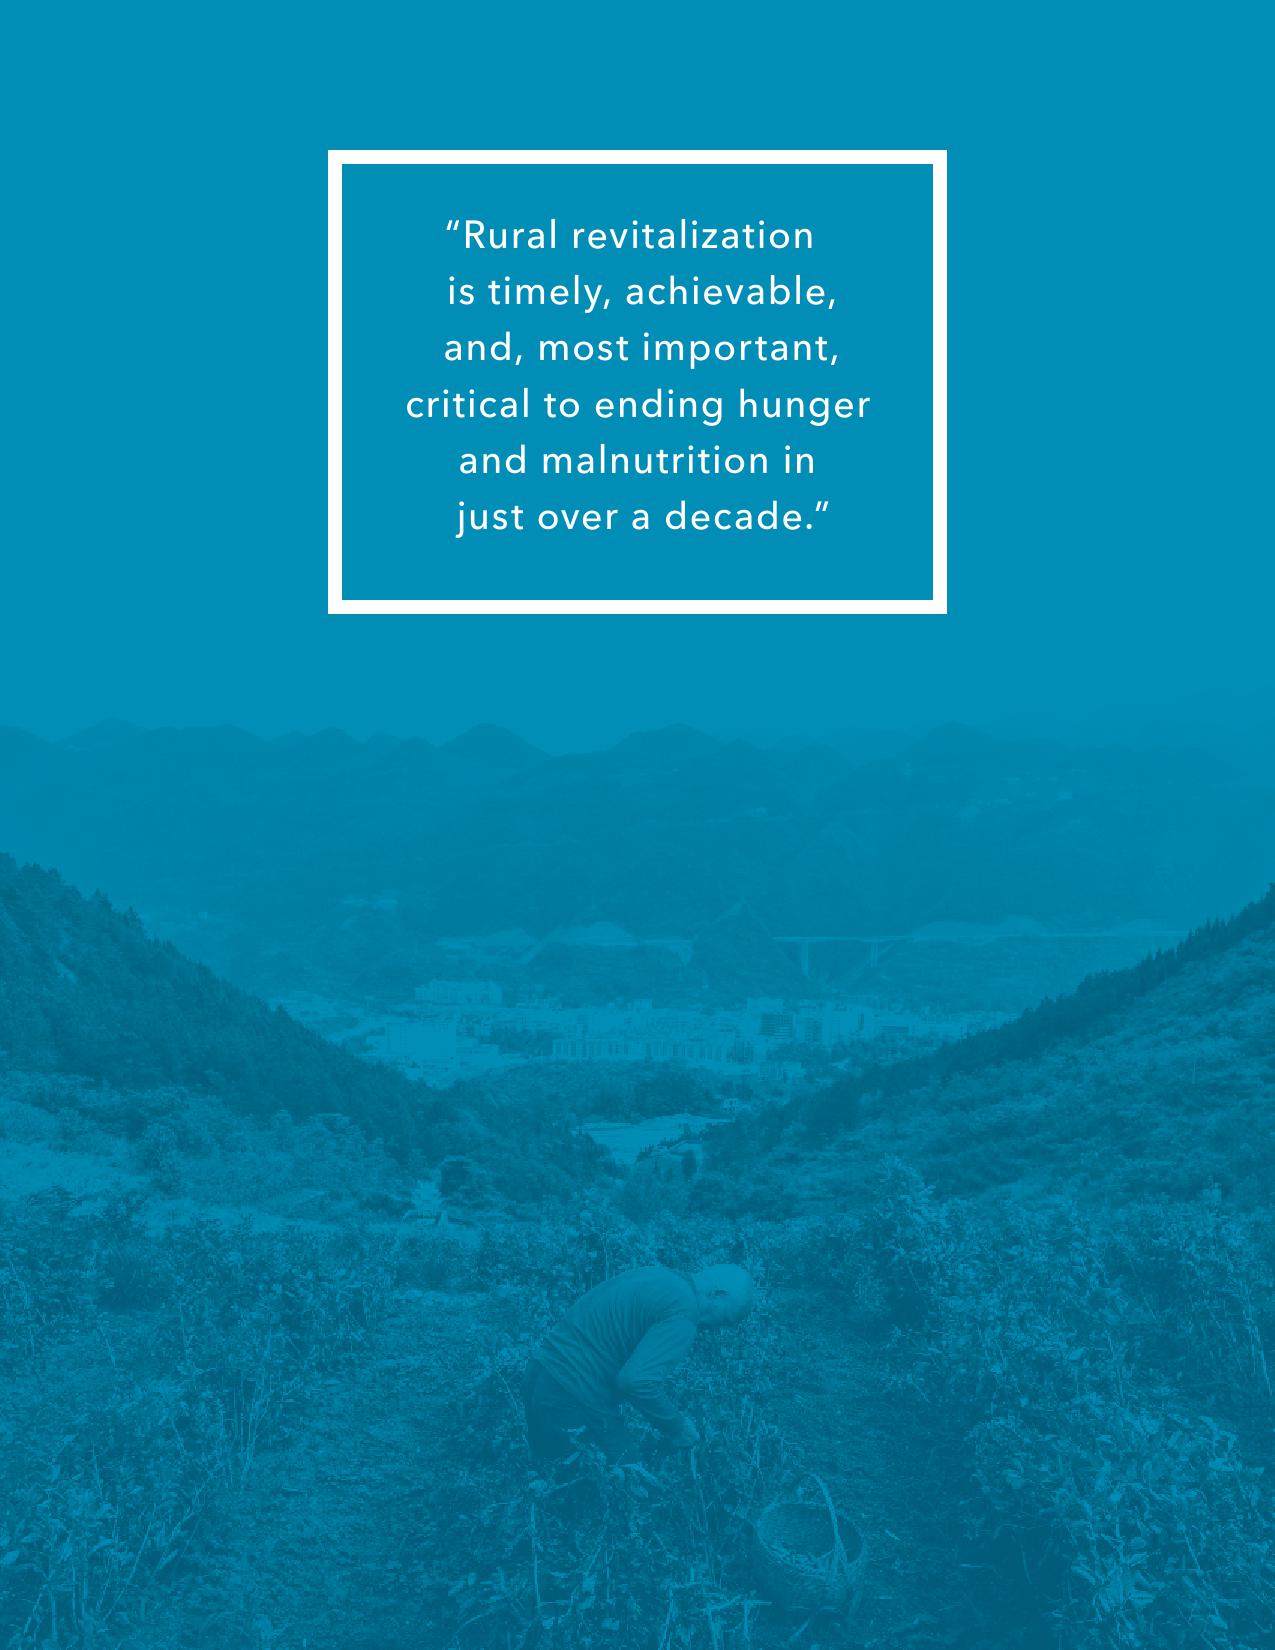 国际食物政策研究所：2019全球粮食政策报告（166页）